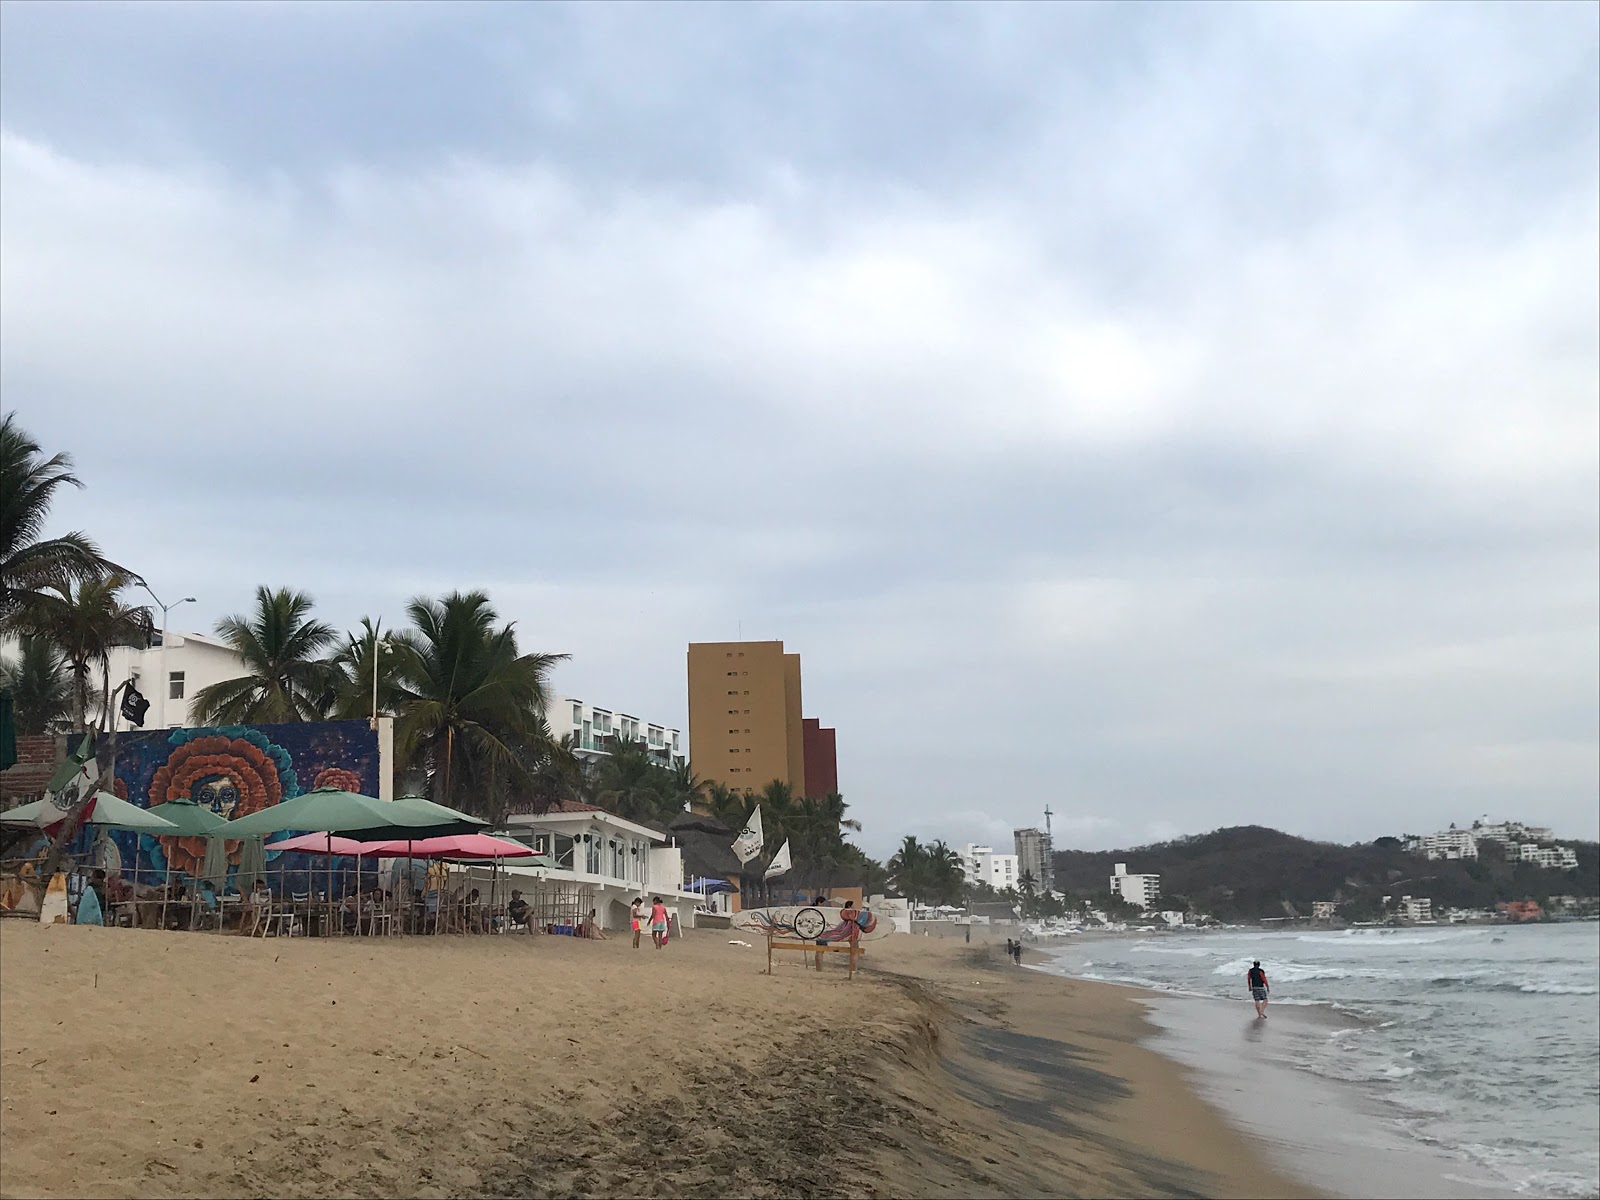 Zdjęcie Playa Olas Altas - popularne miejsce wśród znawców relaksu